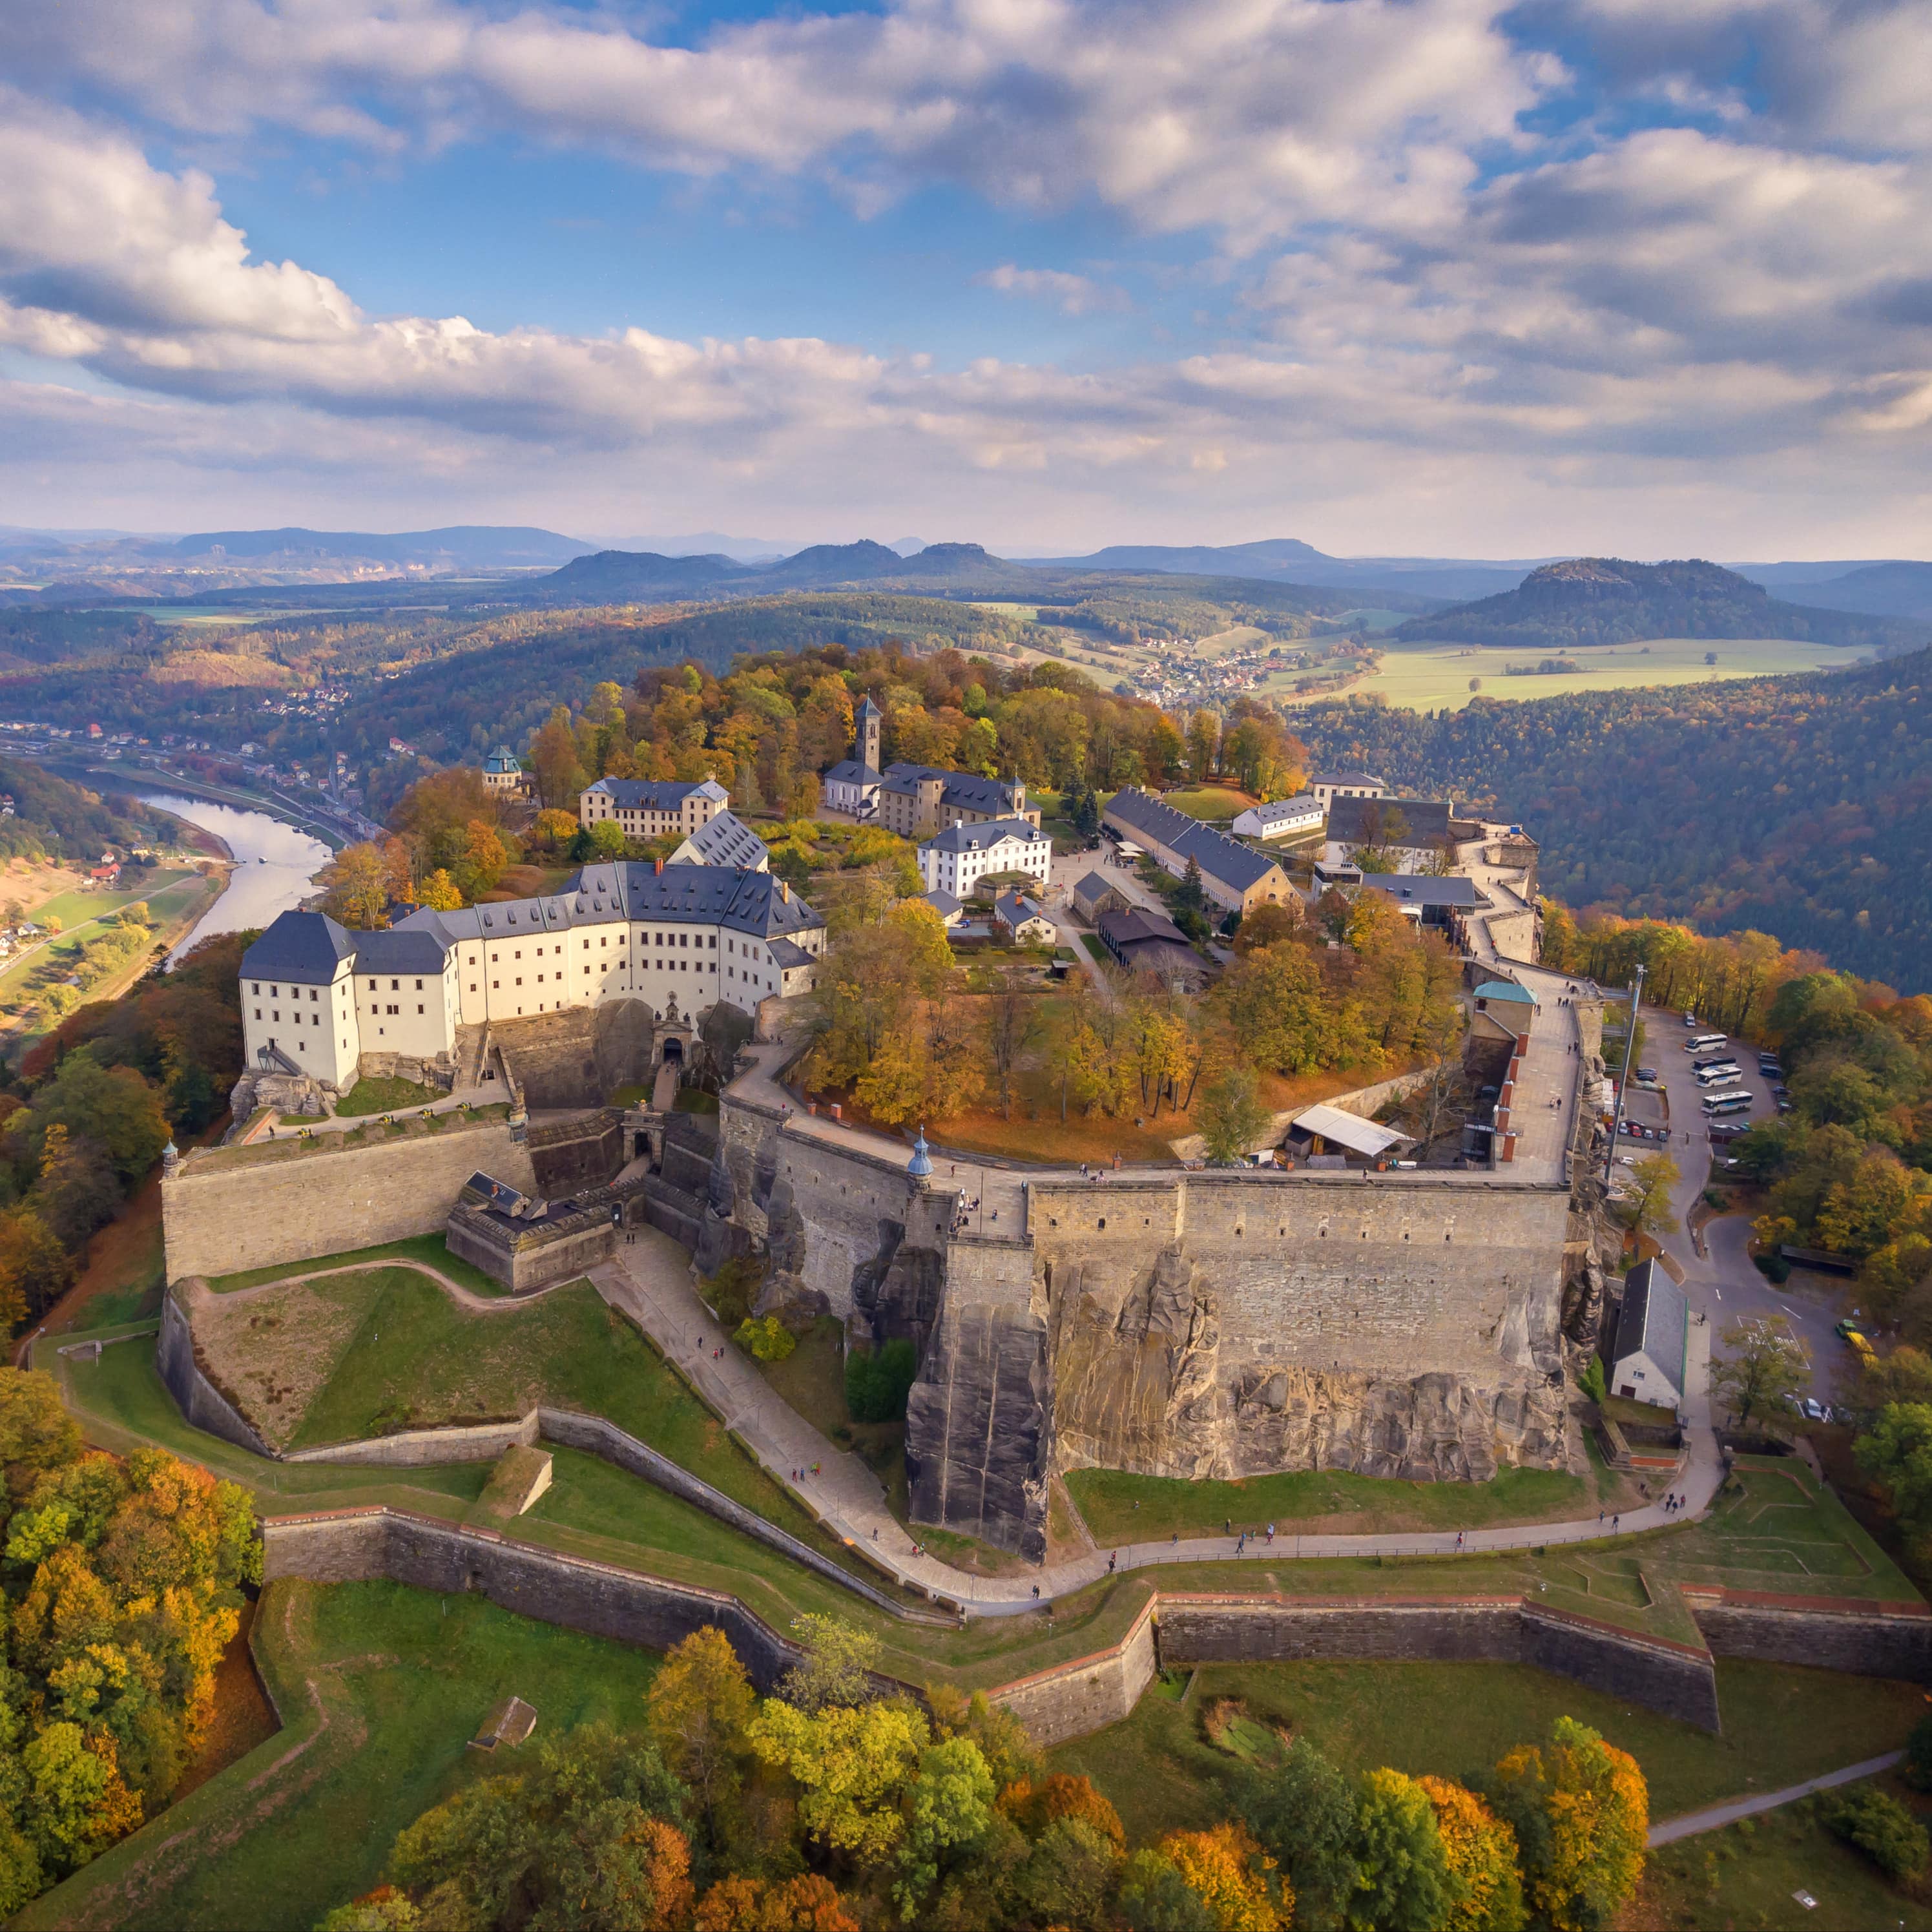 Blick von oben auf die Festung Königstein und die Umgebung.